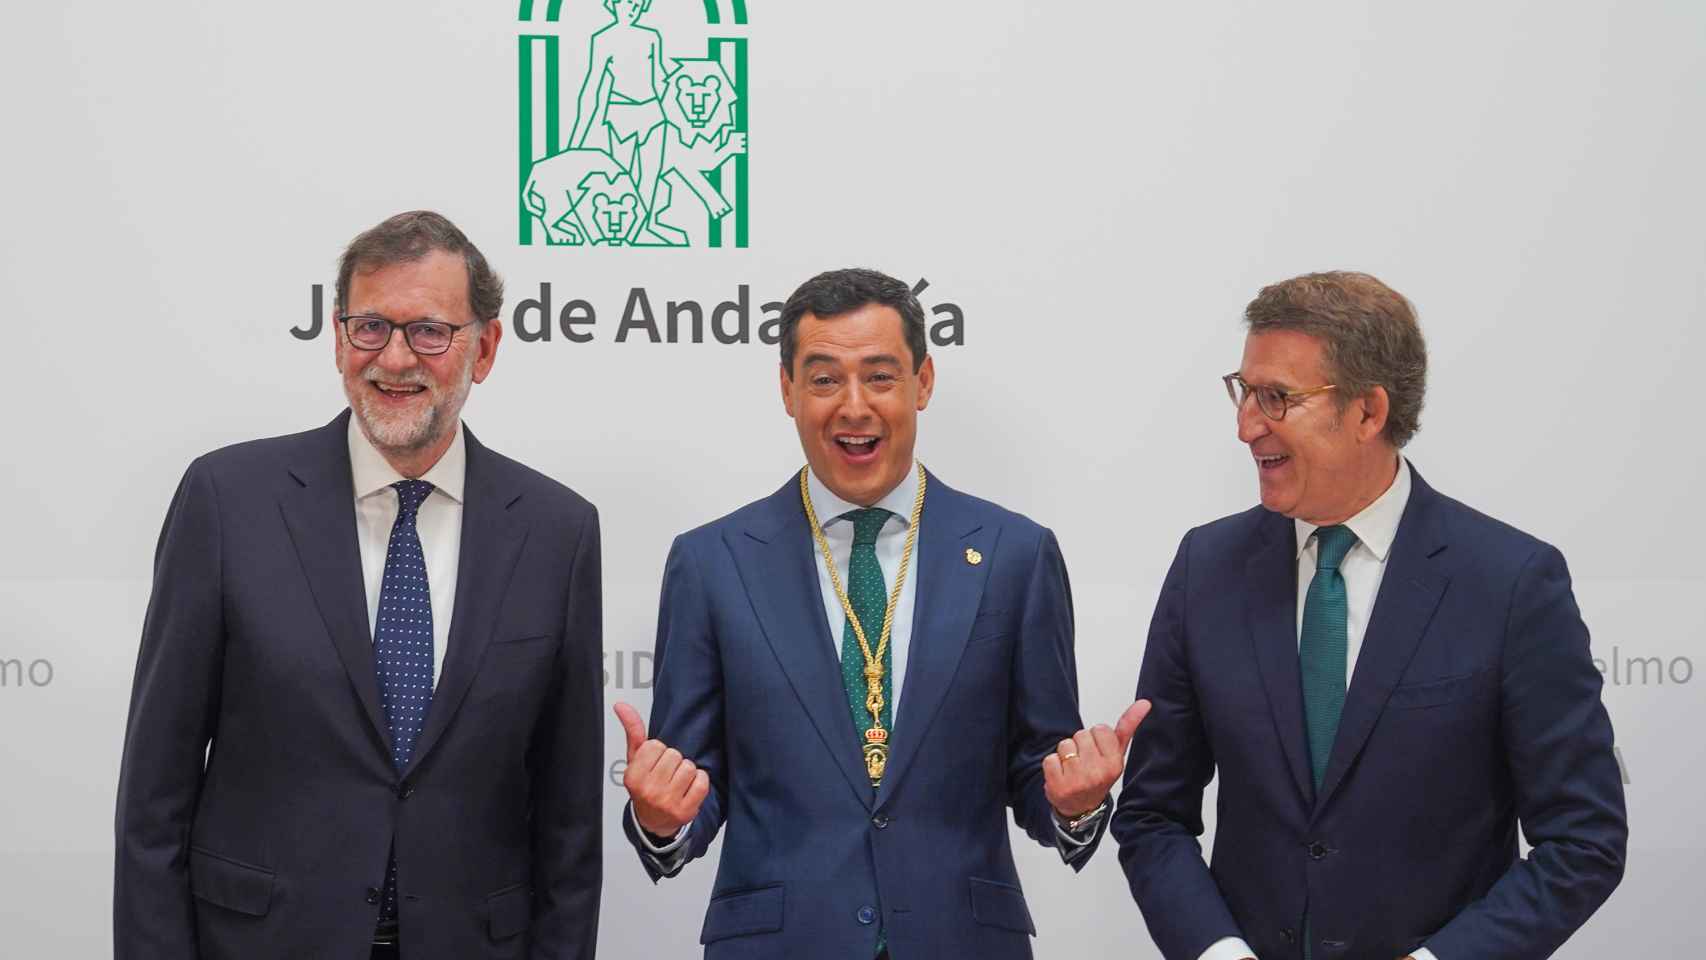 El presidente de la Junta, Juanma Moreno, posa entre Alberto Núñez Feijóo y Mariano Rajoy, durante la toma de posesión.